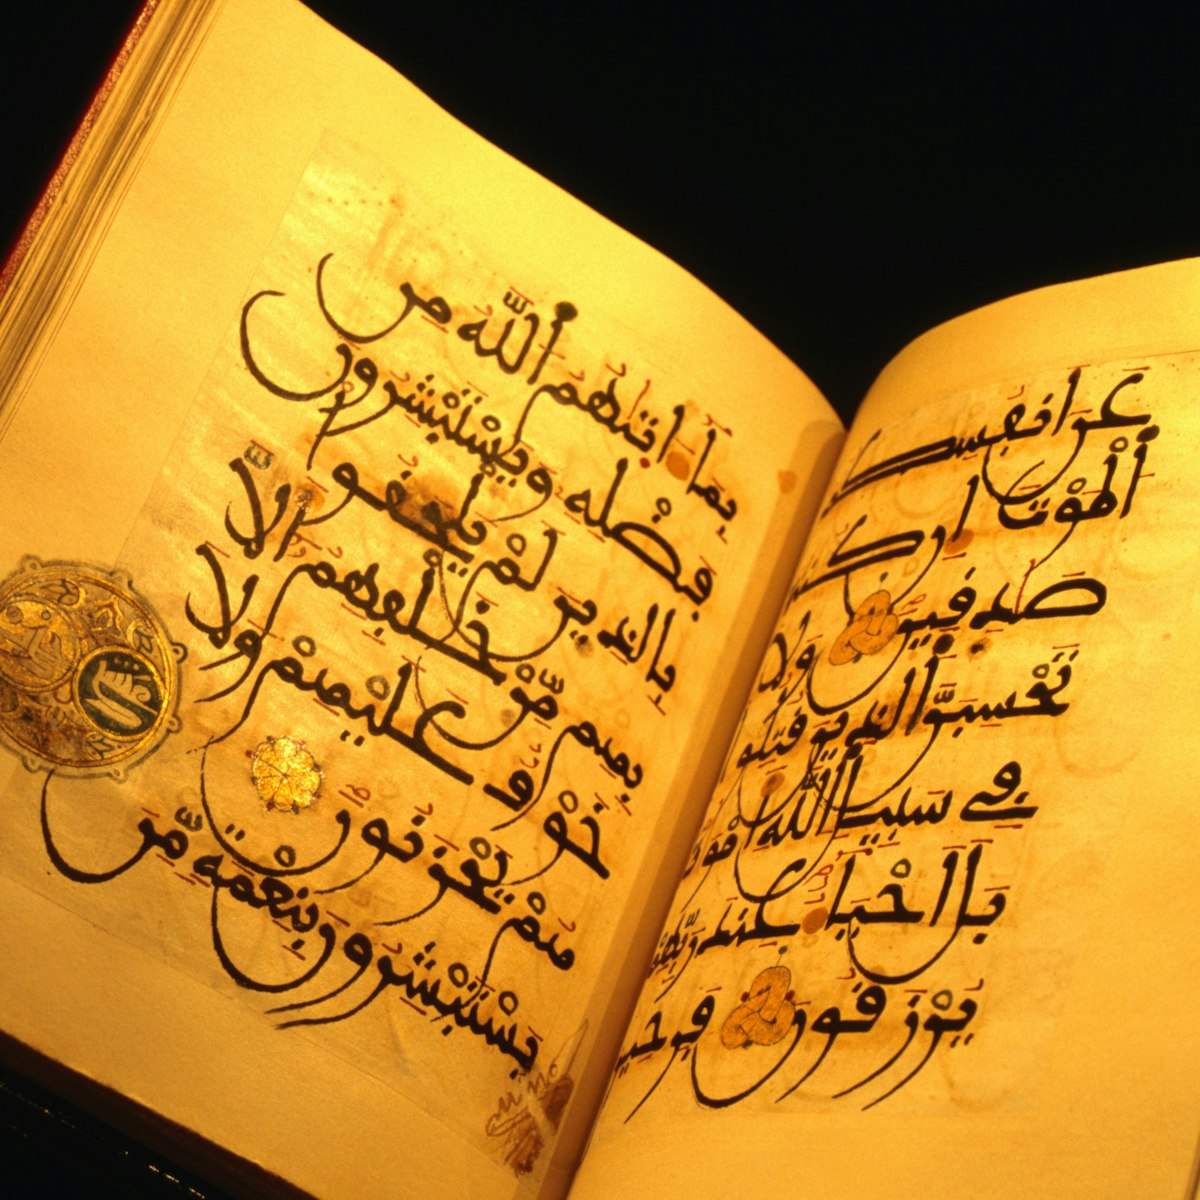 Koran at Chester Beatty Library.